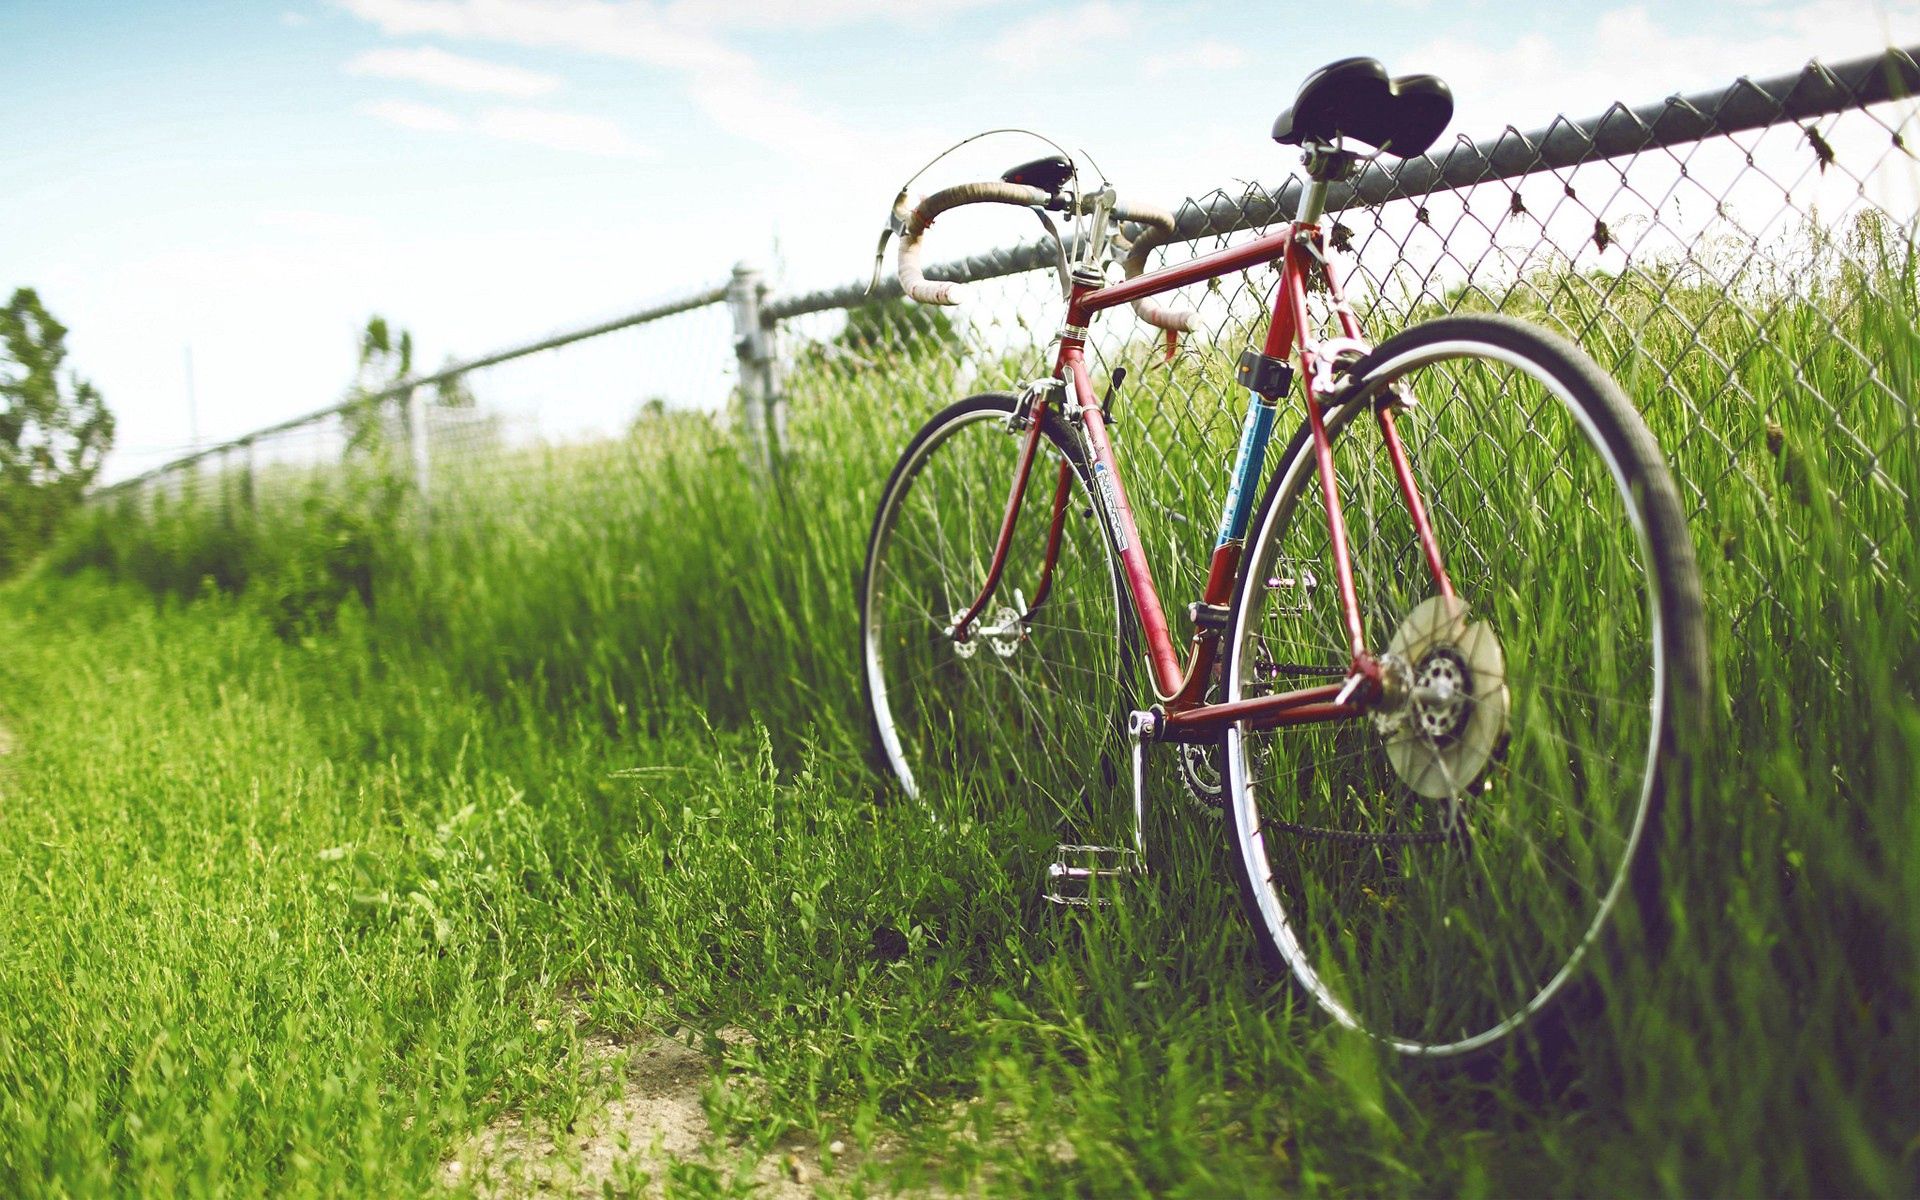 Популярные заставки и фоны Велосипед на компьютер